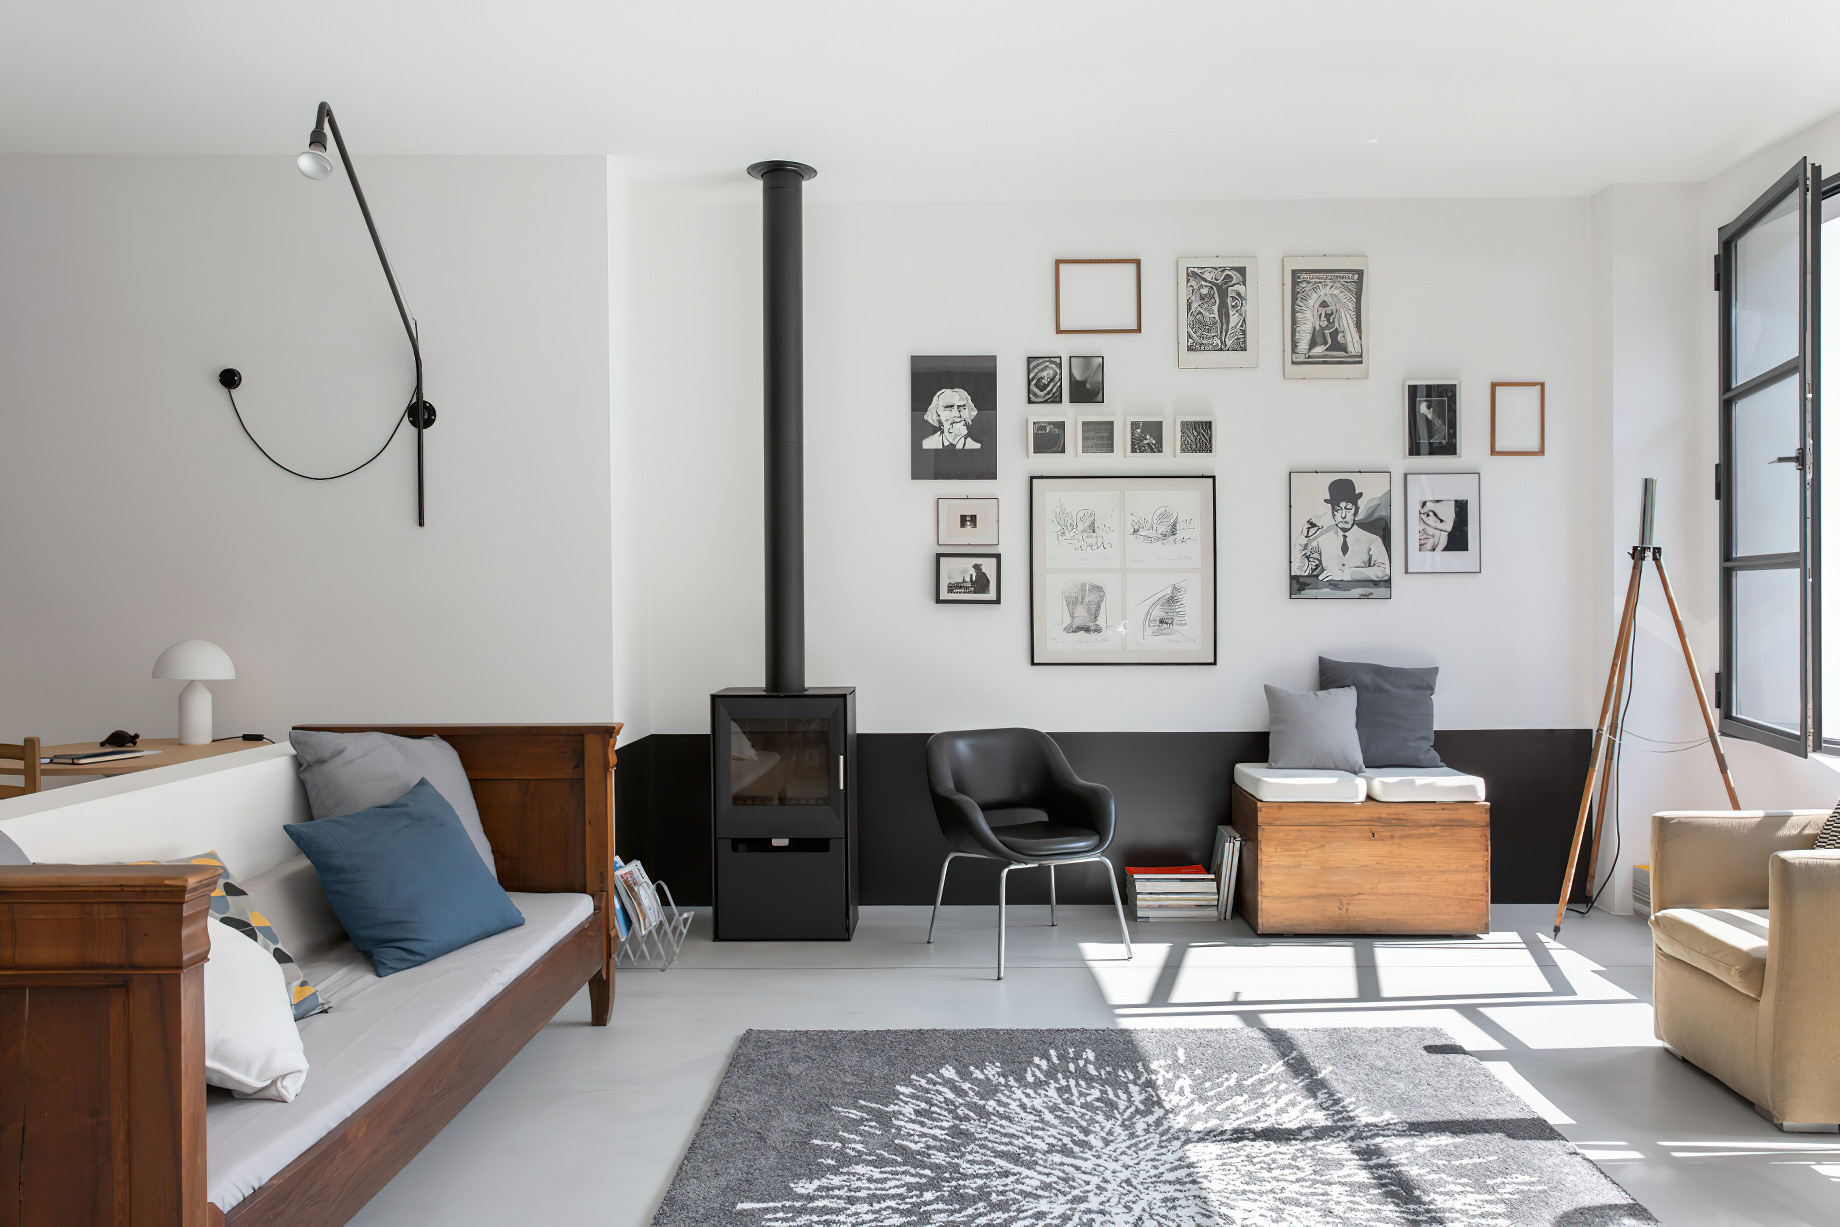 Casa Cialdini Eclectic Interior Design Milan, Italy – Stefania Micotti